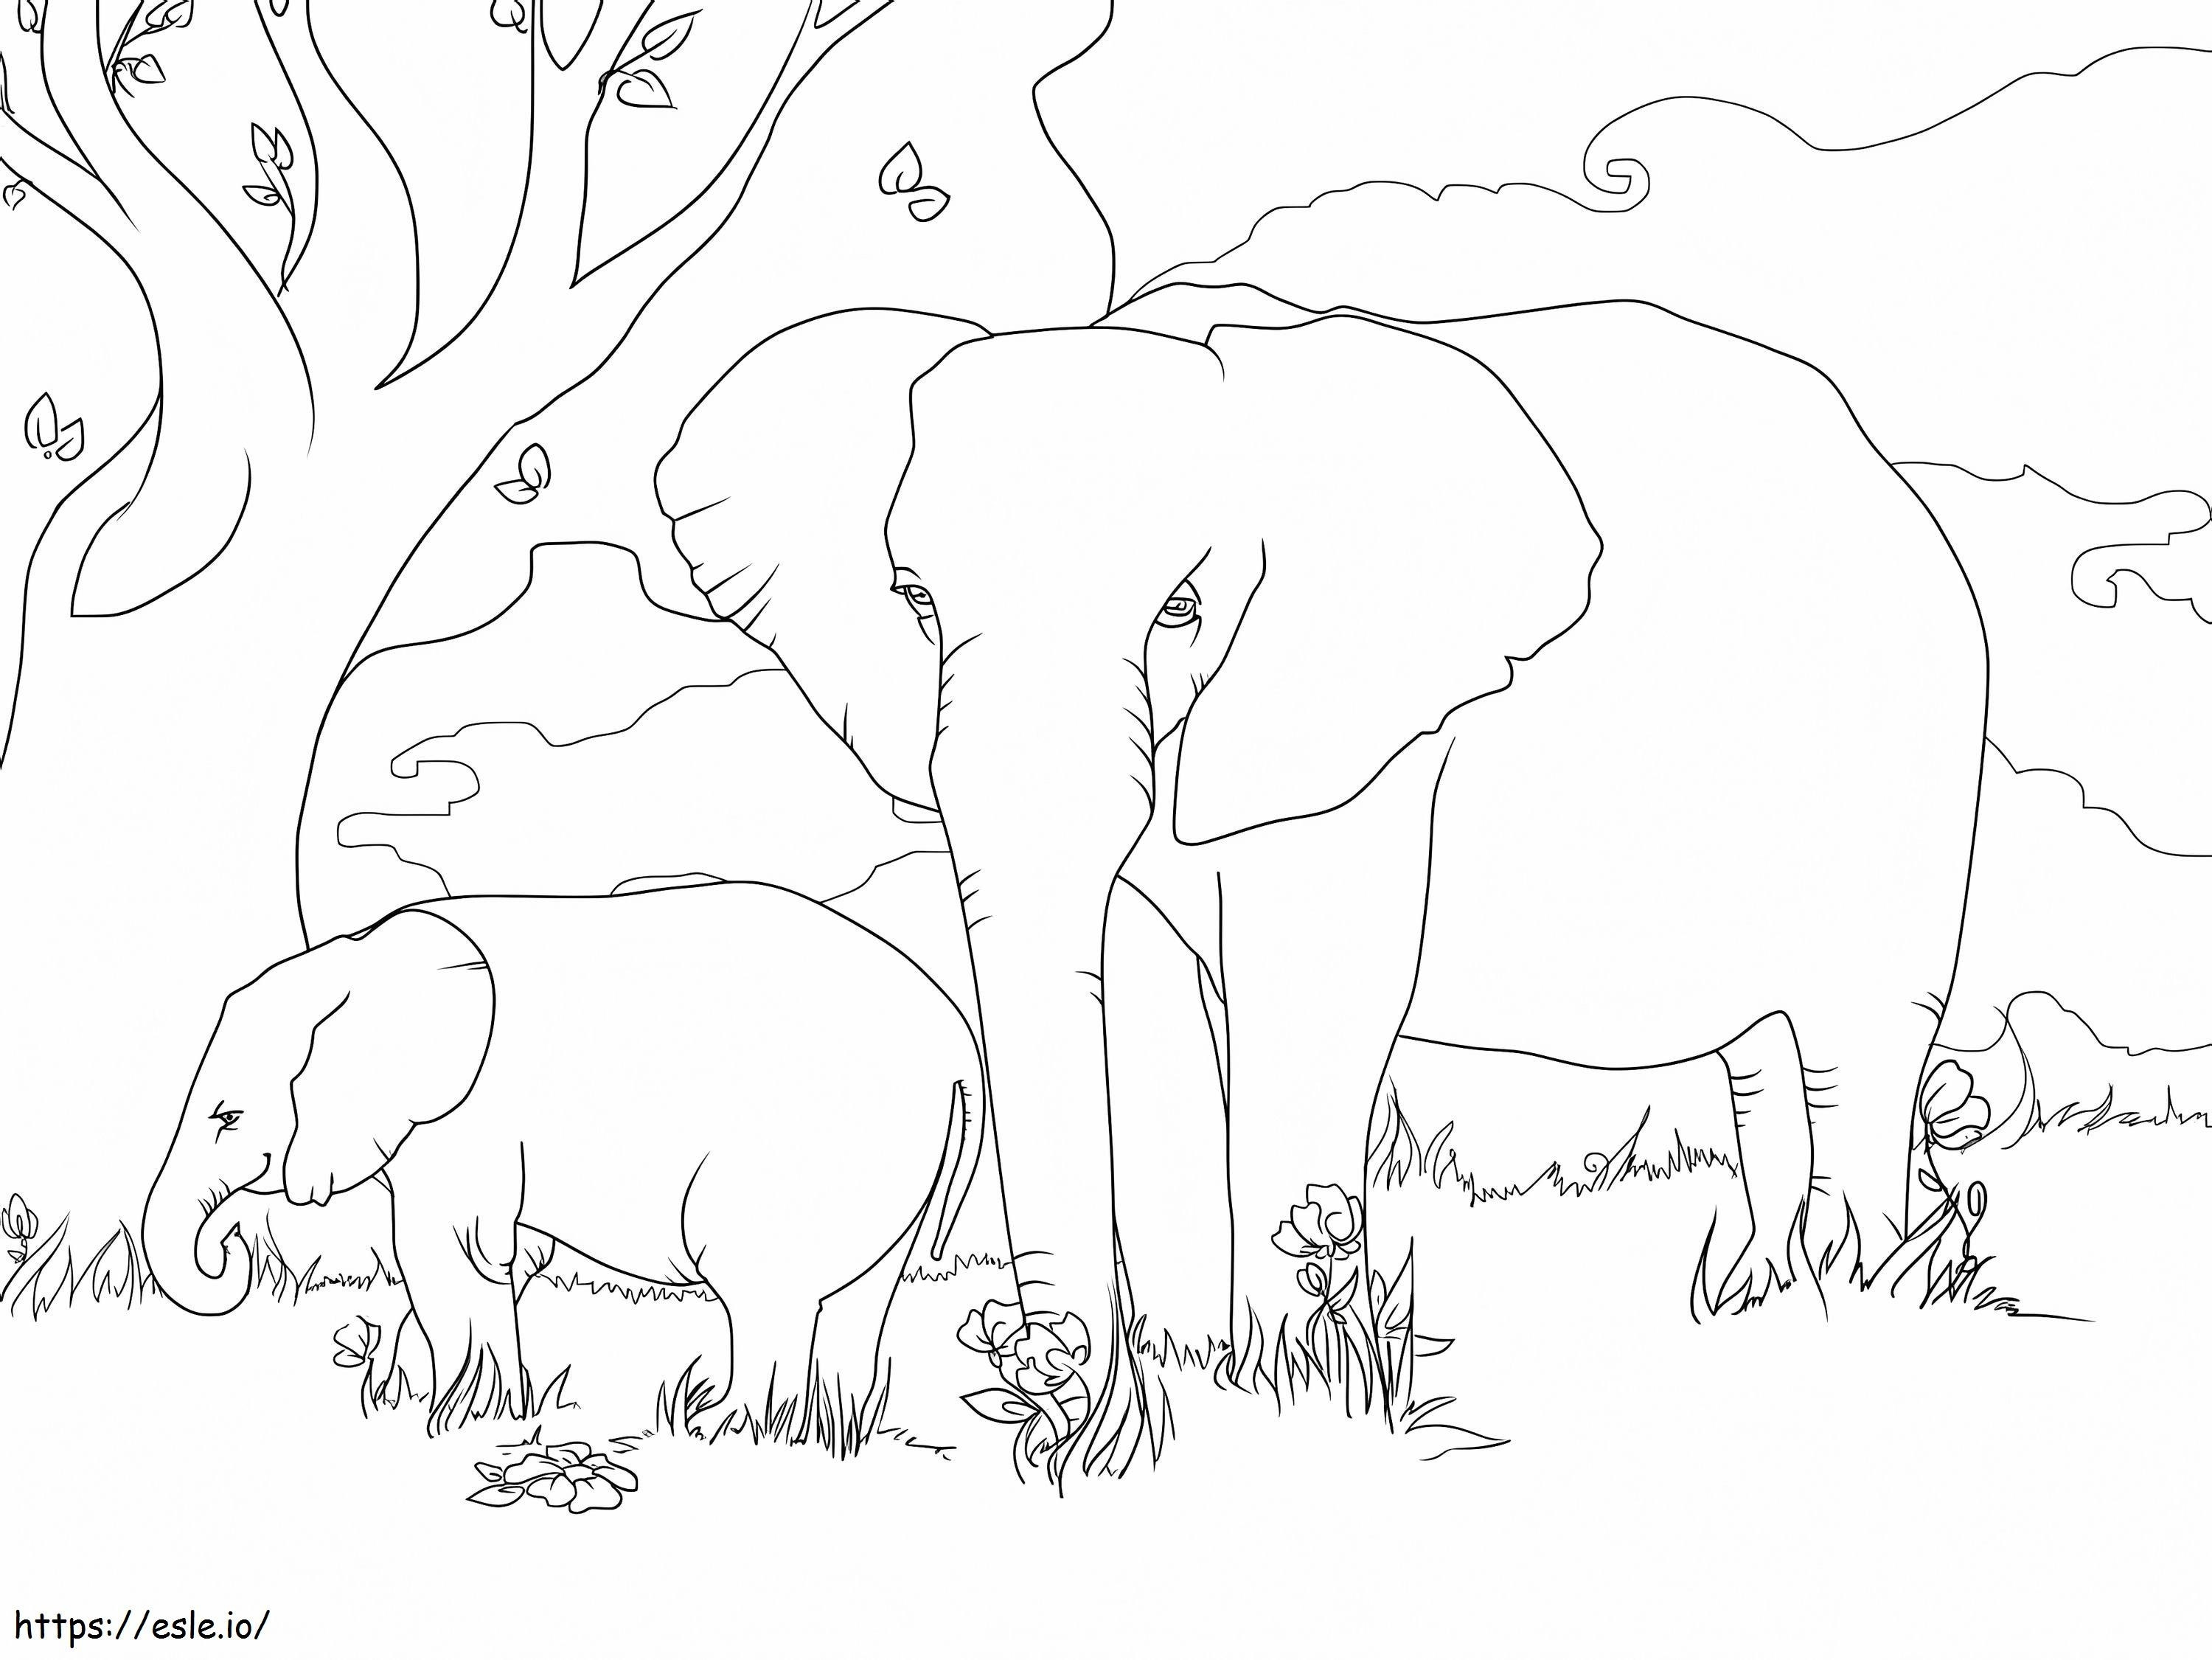 Elefantes africanos de sabana para colorear